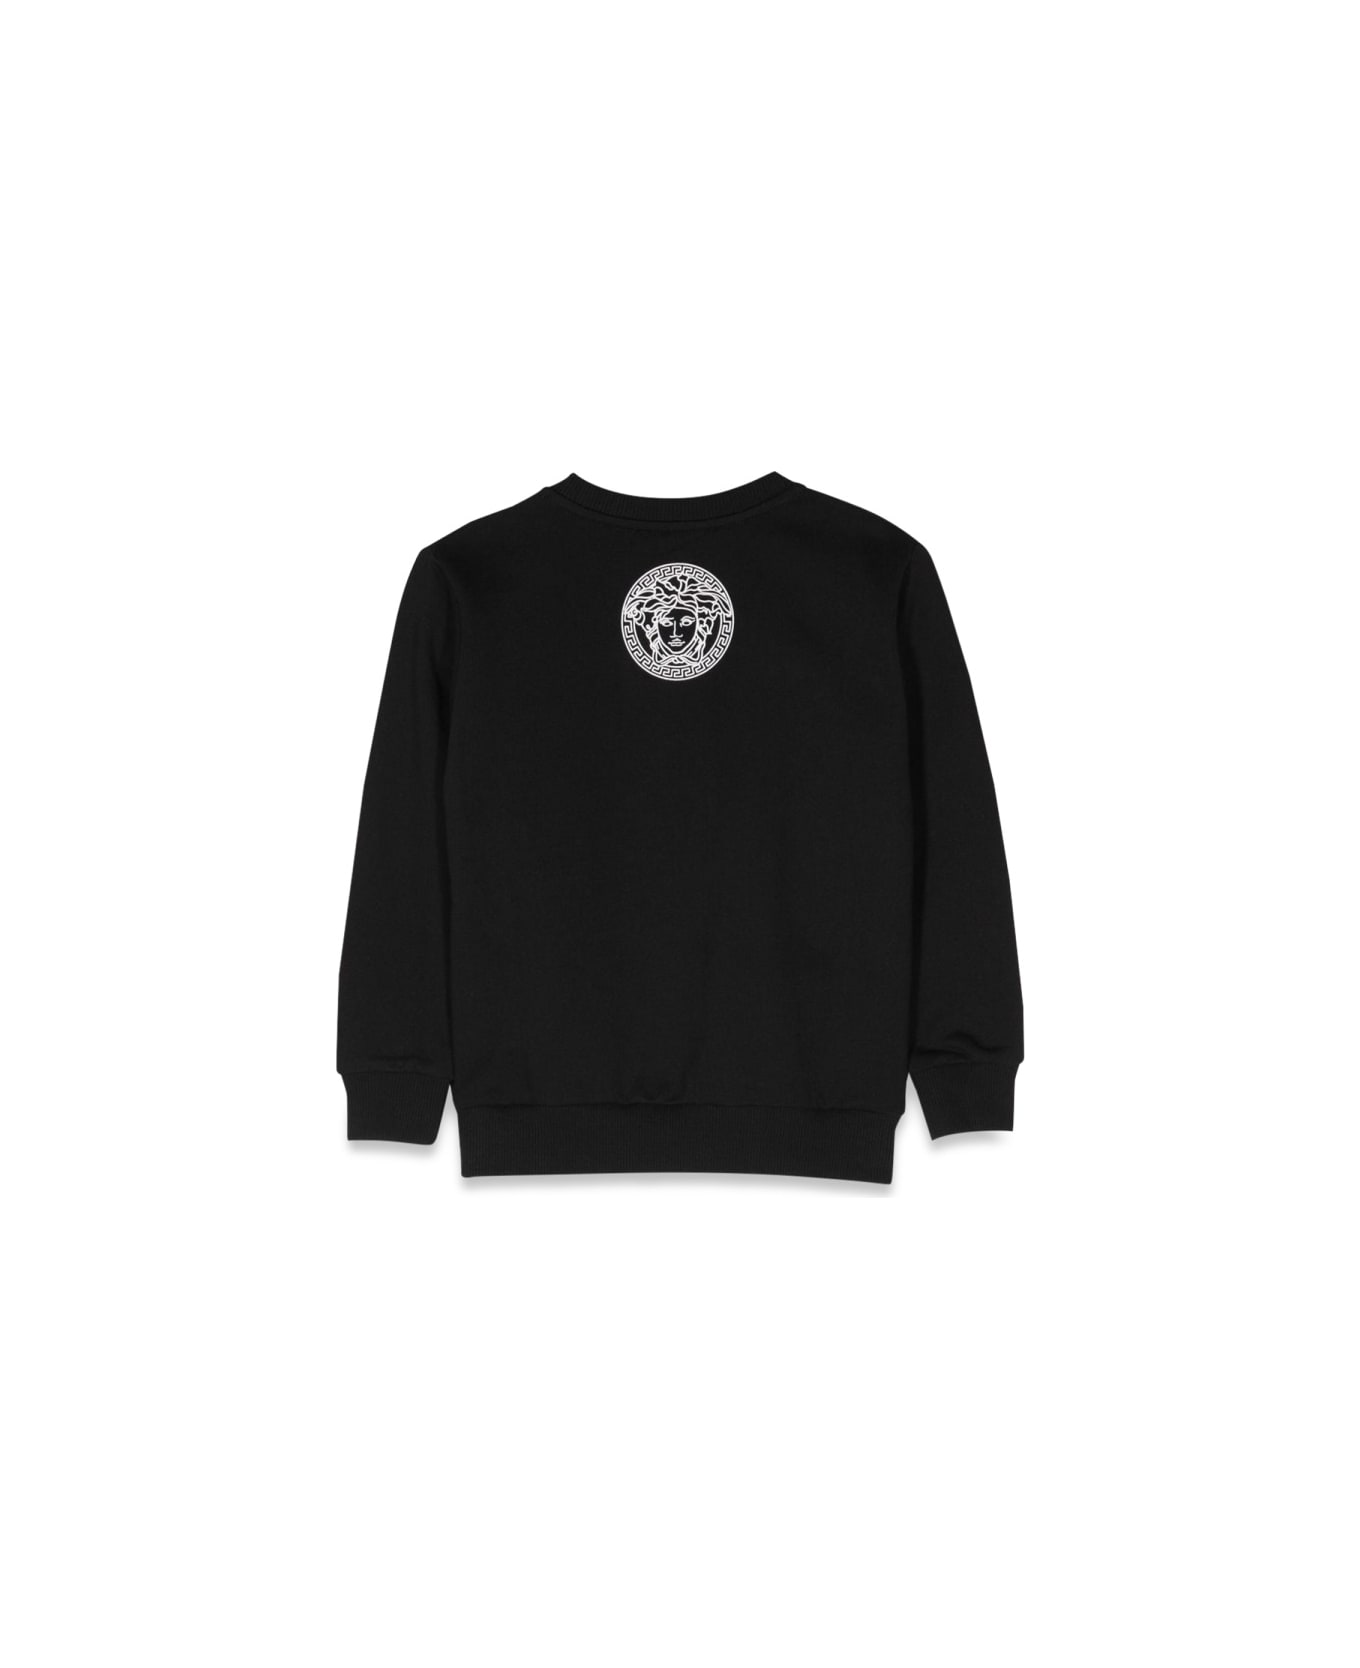 Versace Logo Crewneck Sweatshirt - BLACK